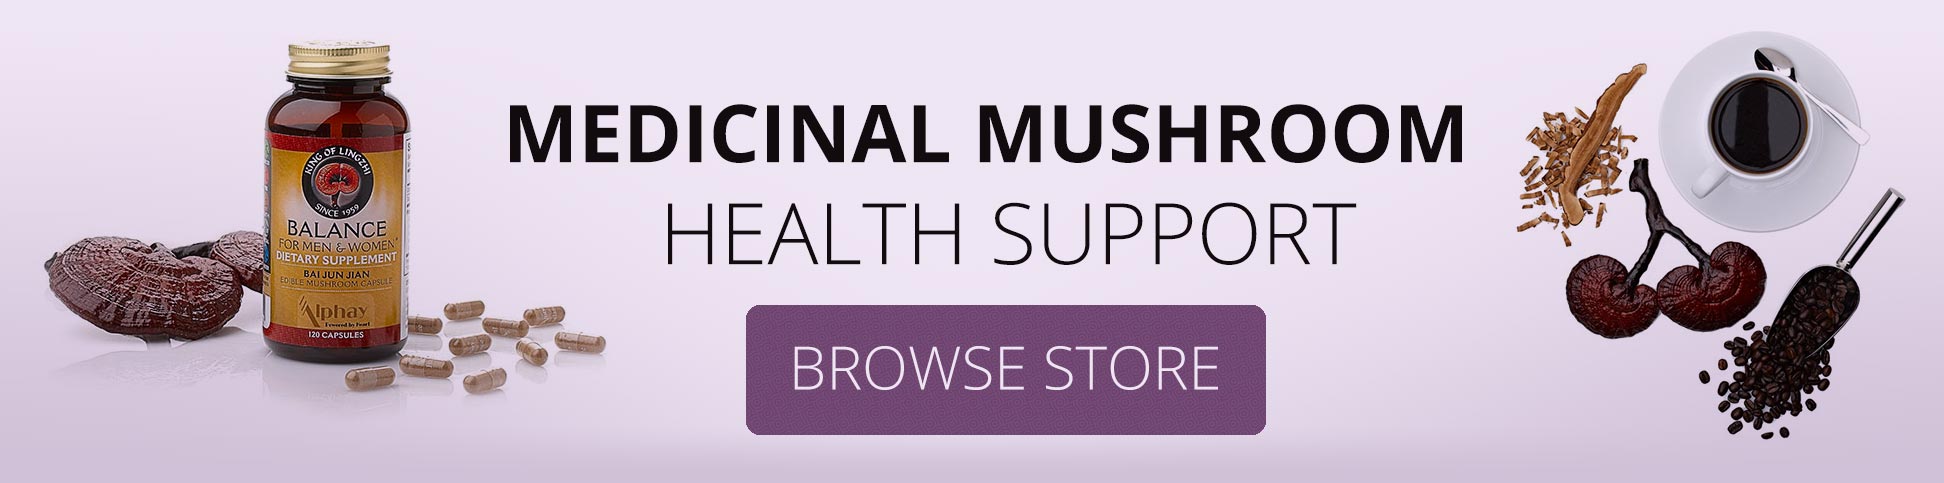 Medicinal Mushroom - Health Support